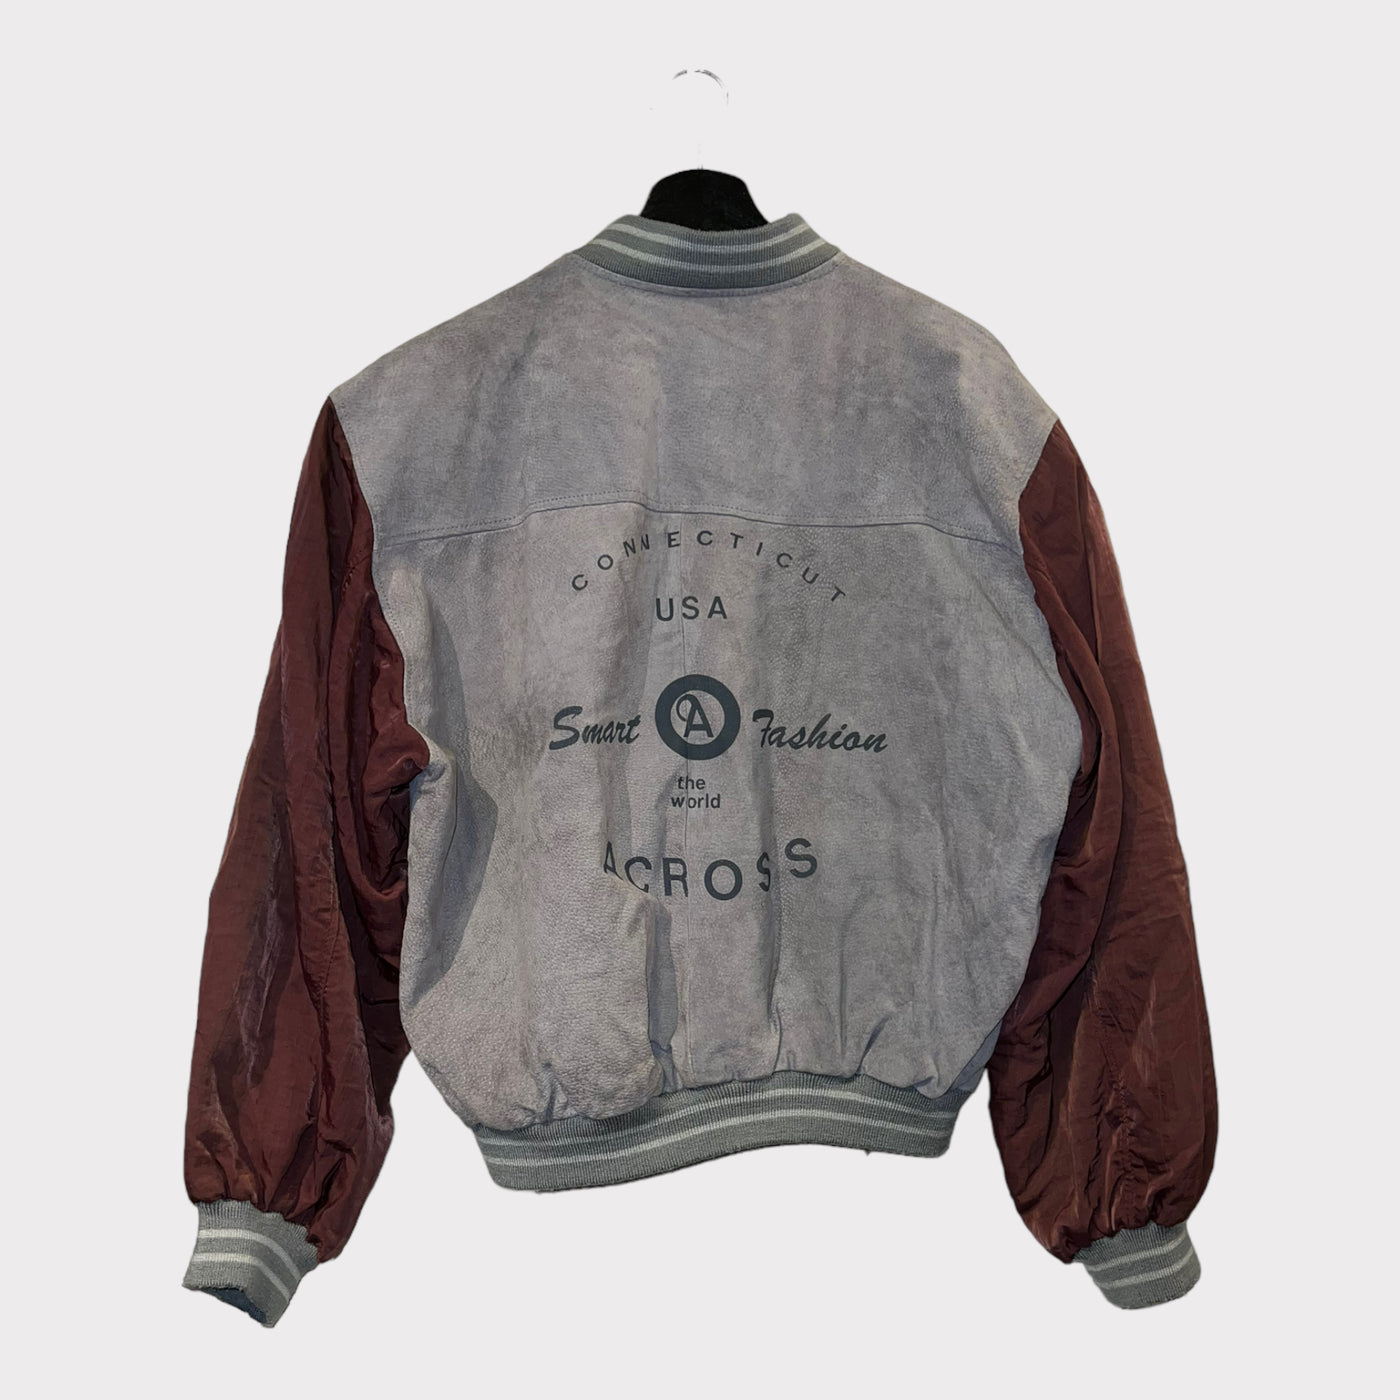 Vintage bomber jacket in leather